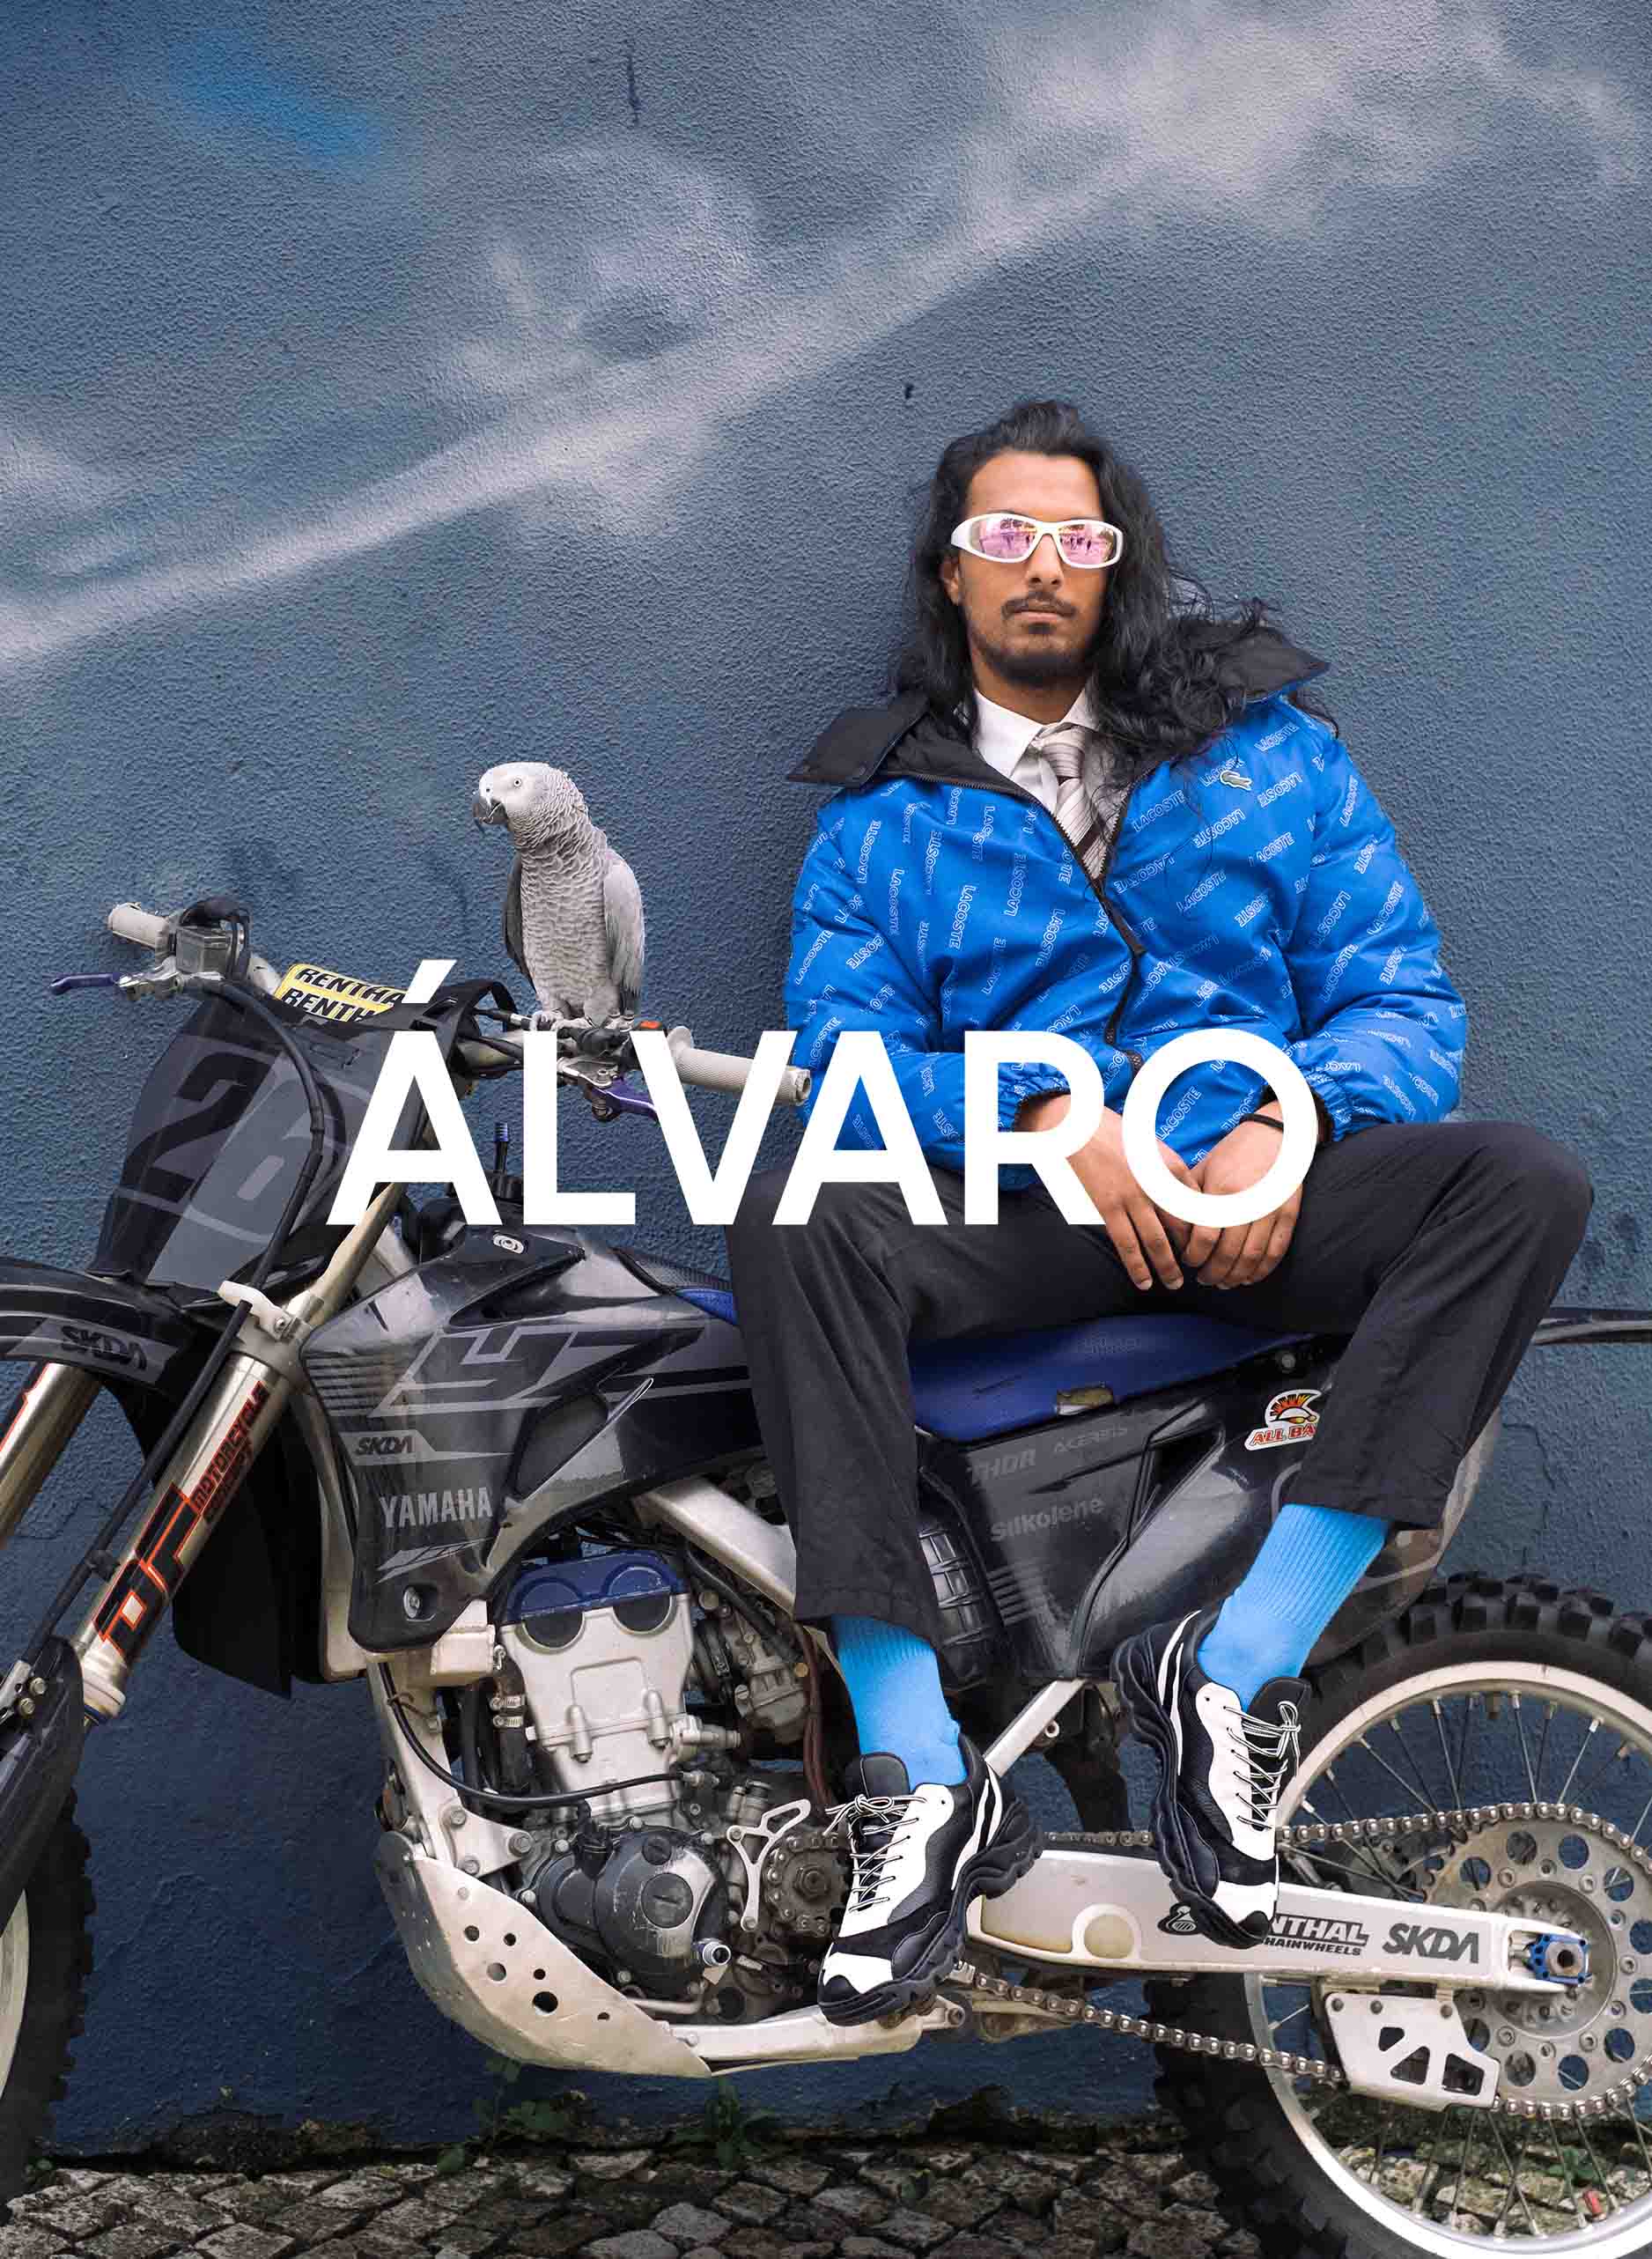 Un hombre llamado Álvaro sentado en una motocicleta con un pájaro, vestido Diverge sneakers, promoviendo el calzado personalizado y el impacto social a través del proyecto Imagine.